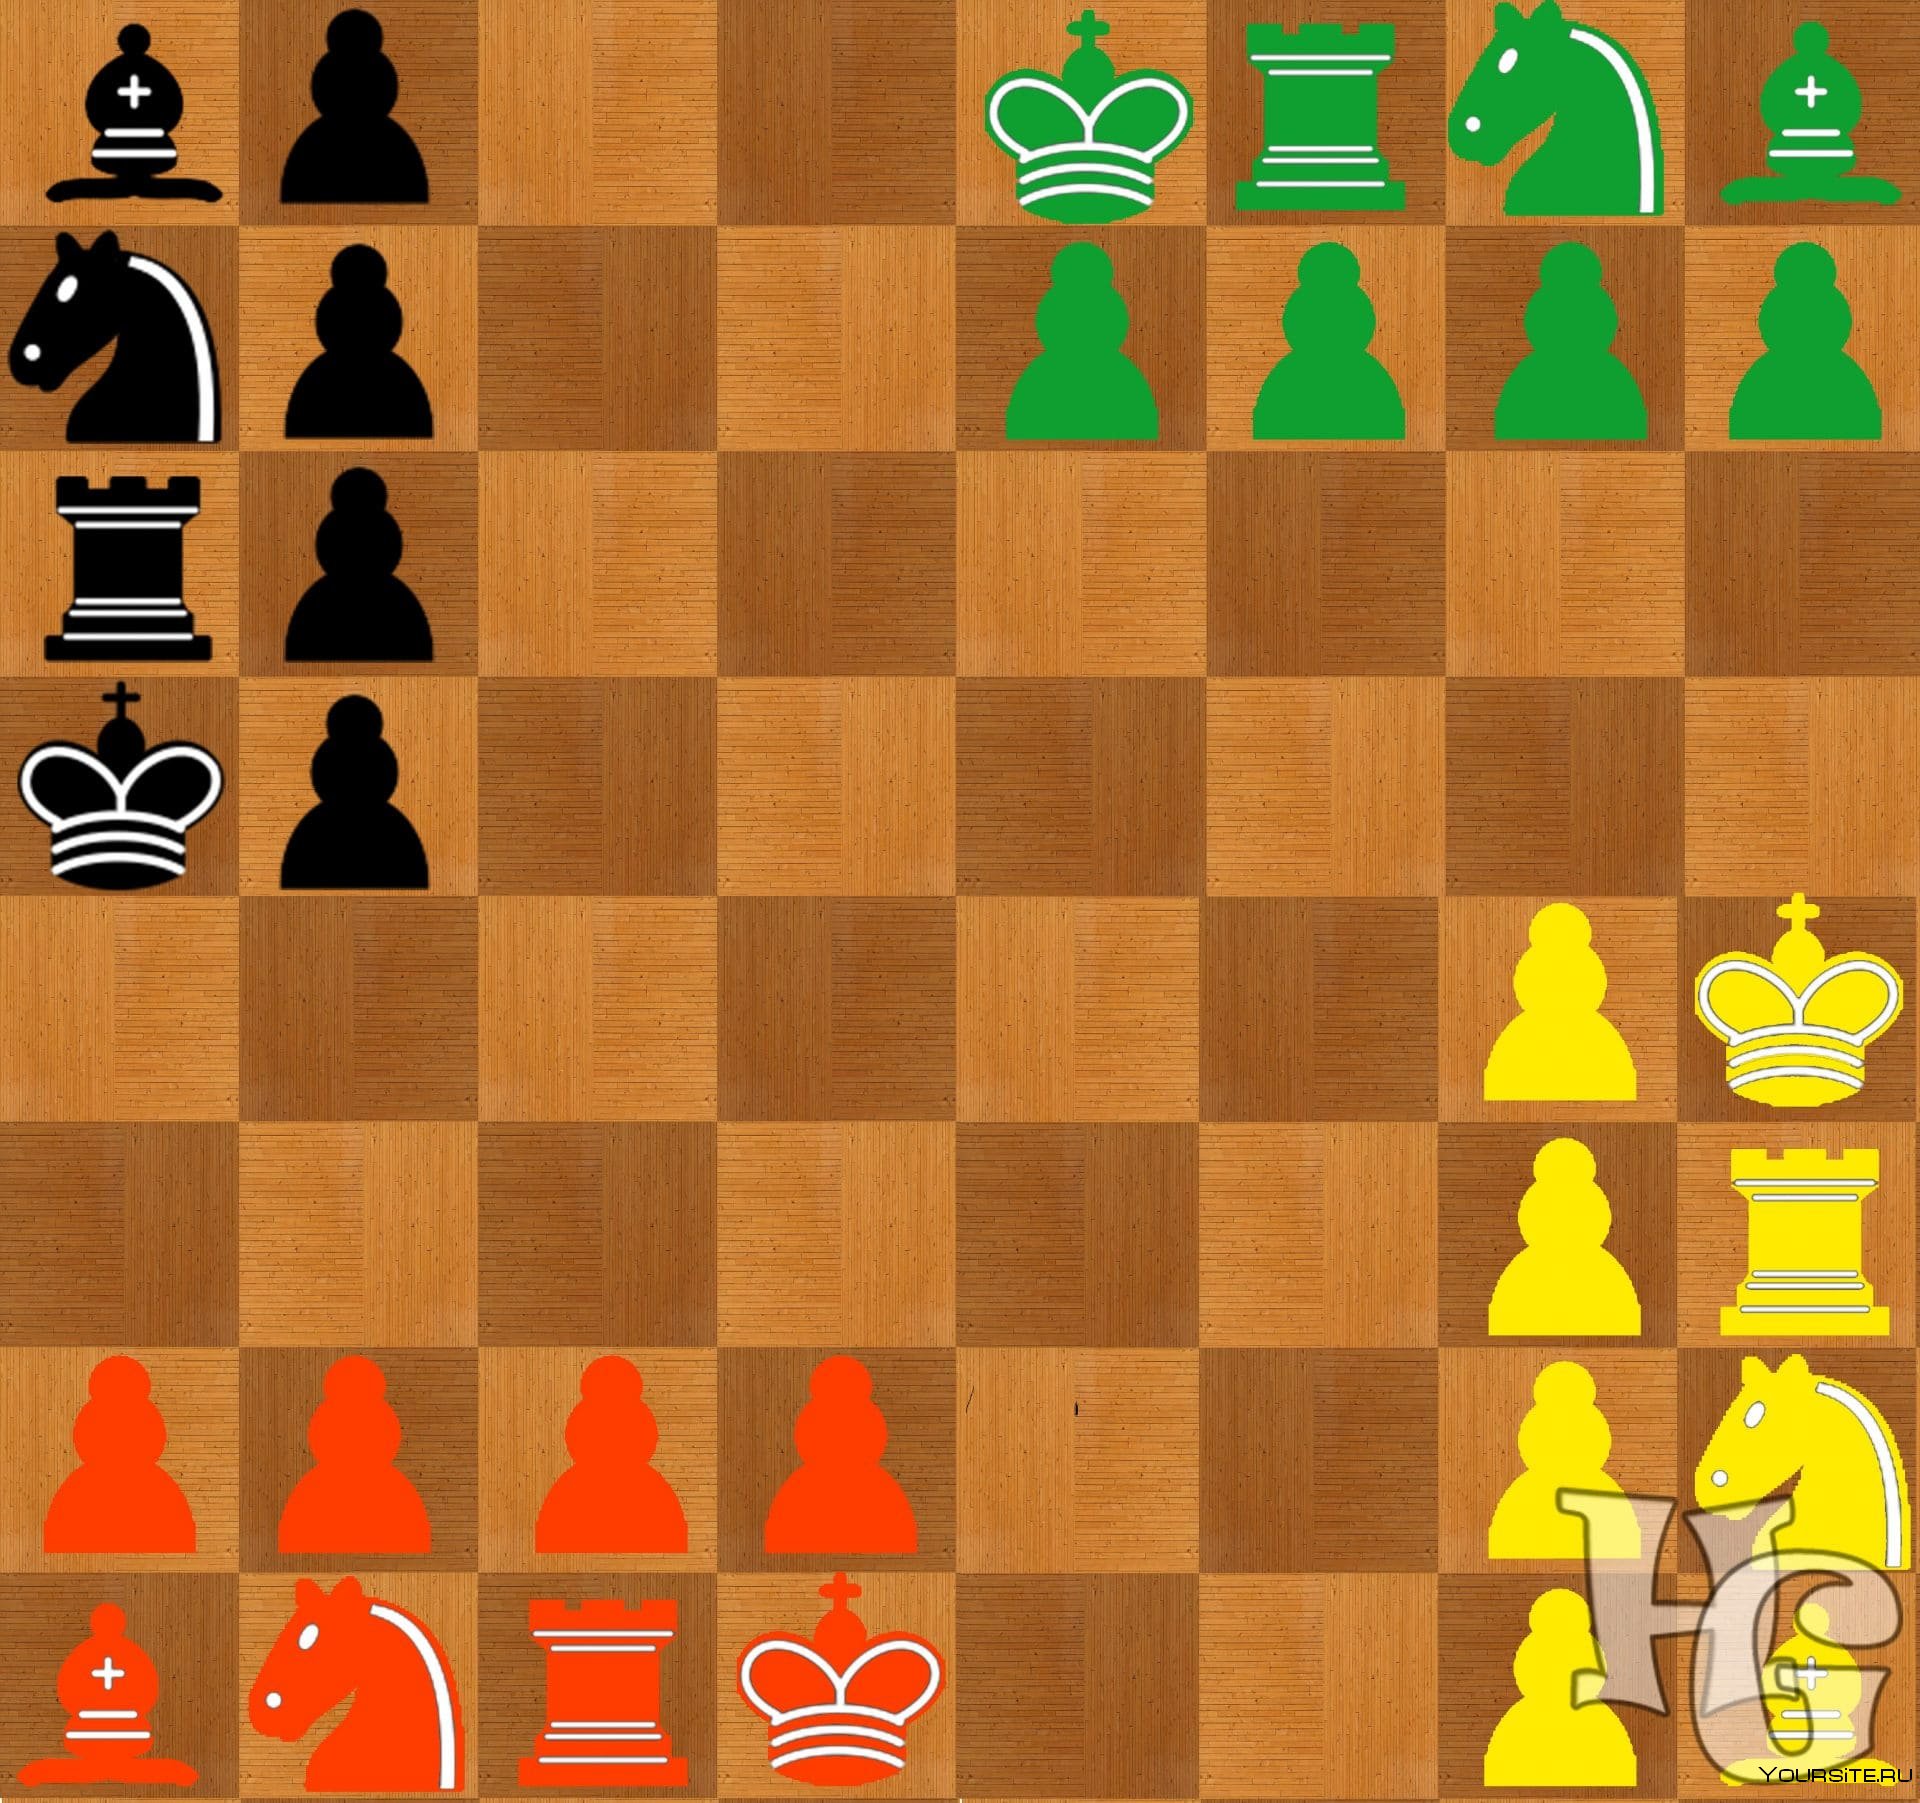 Древняя игра одна из предшественница шахмат. Древние шахматы чатуранга. Древнеиндийская игра «чатуранга»,. Индийские шахматы чатуранга. Древние индийские шахматы чатуранга.